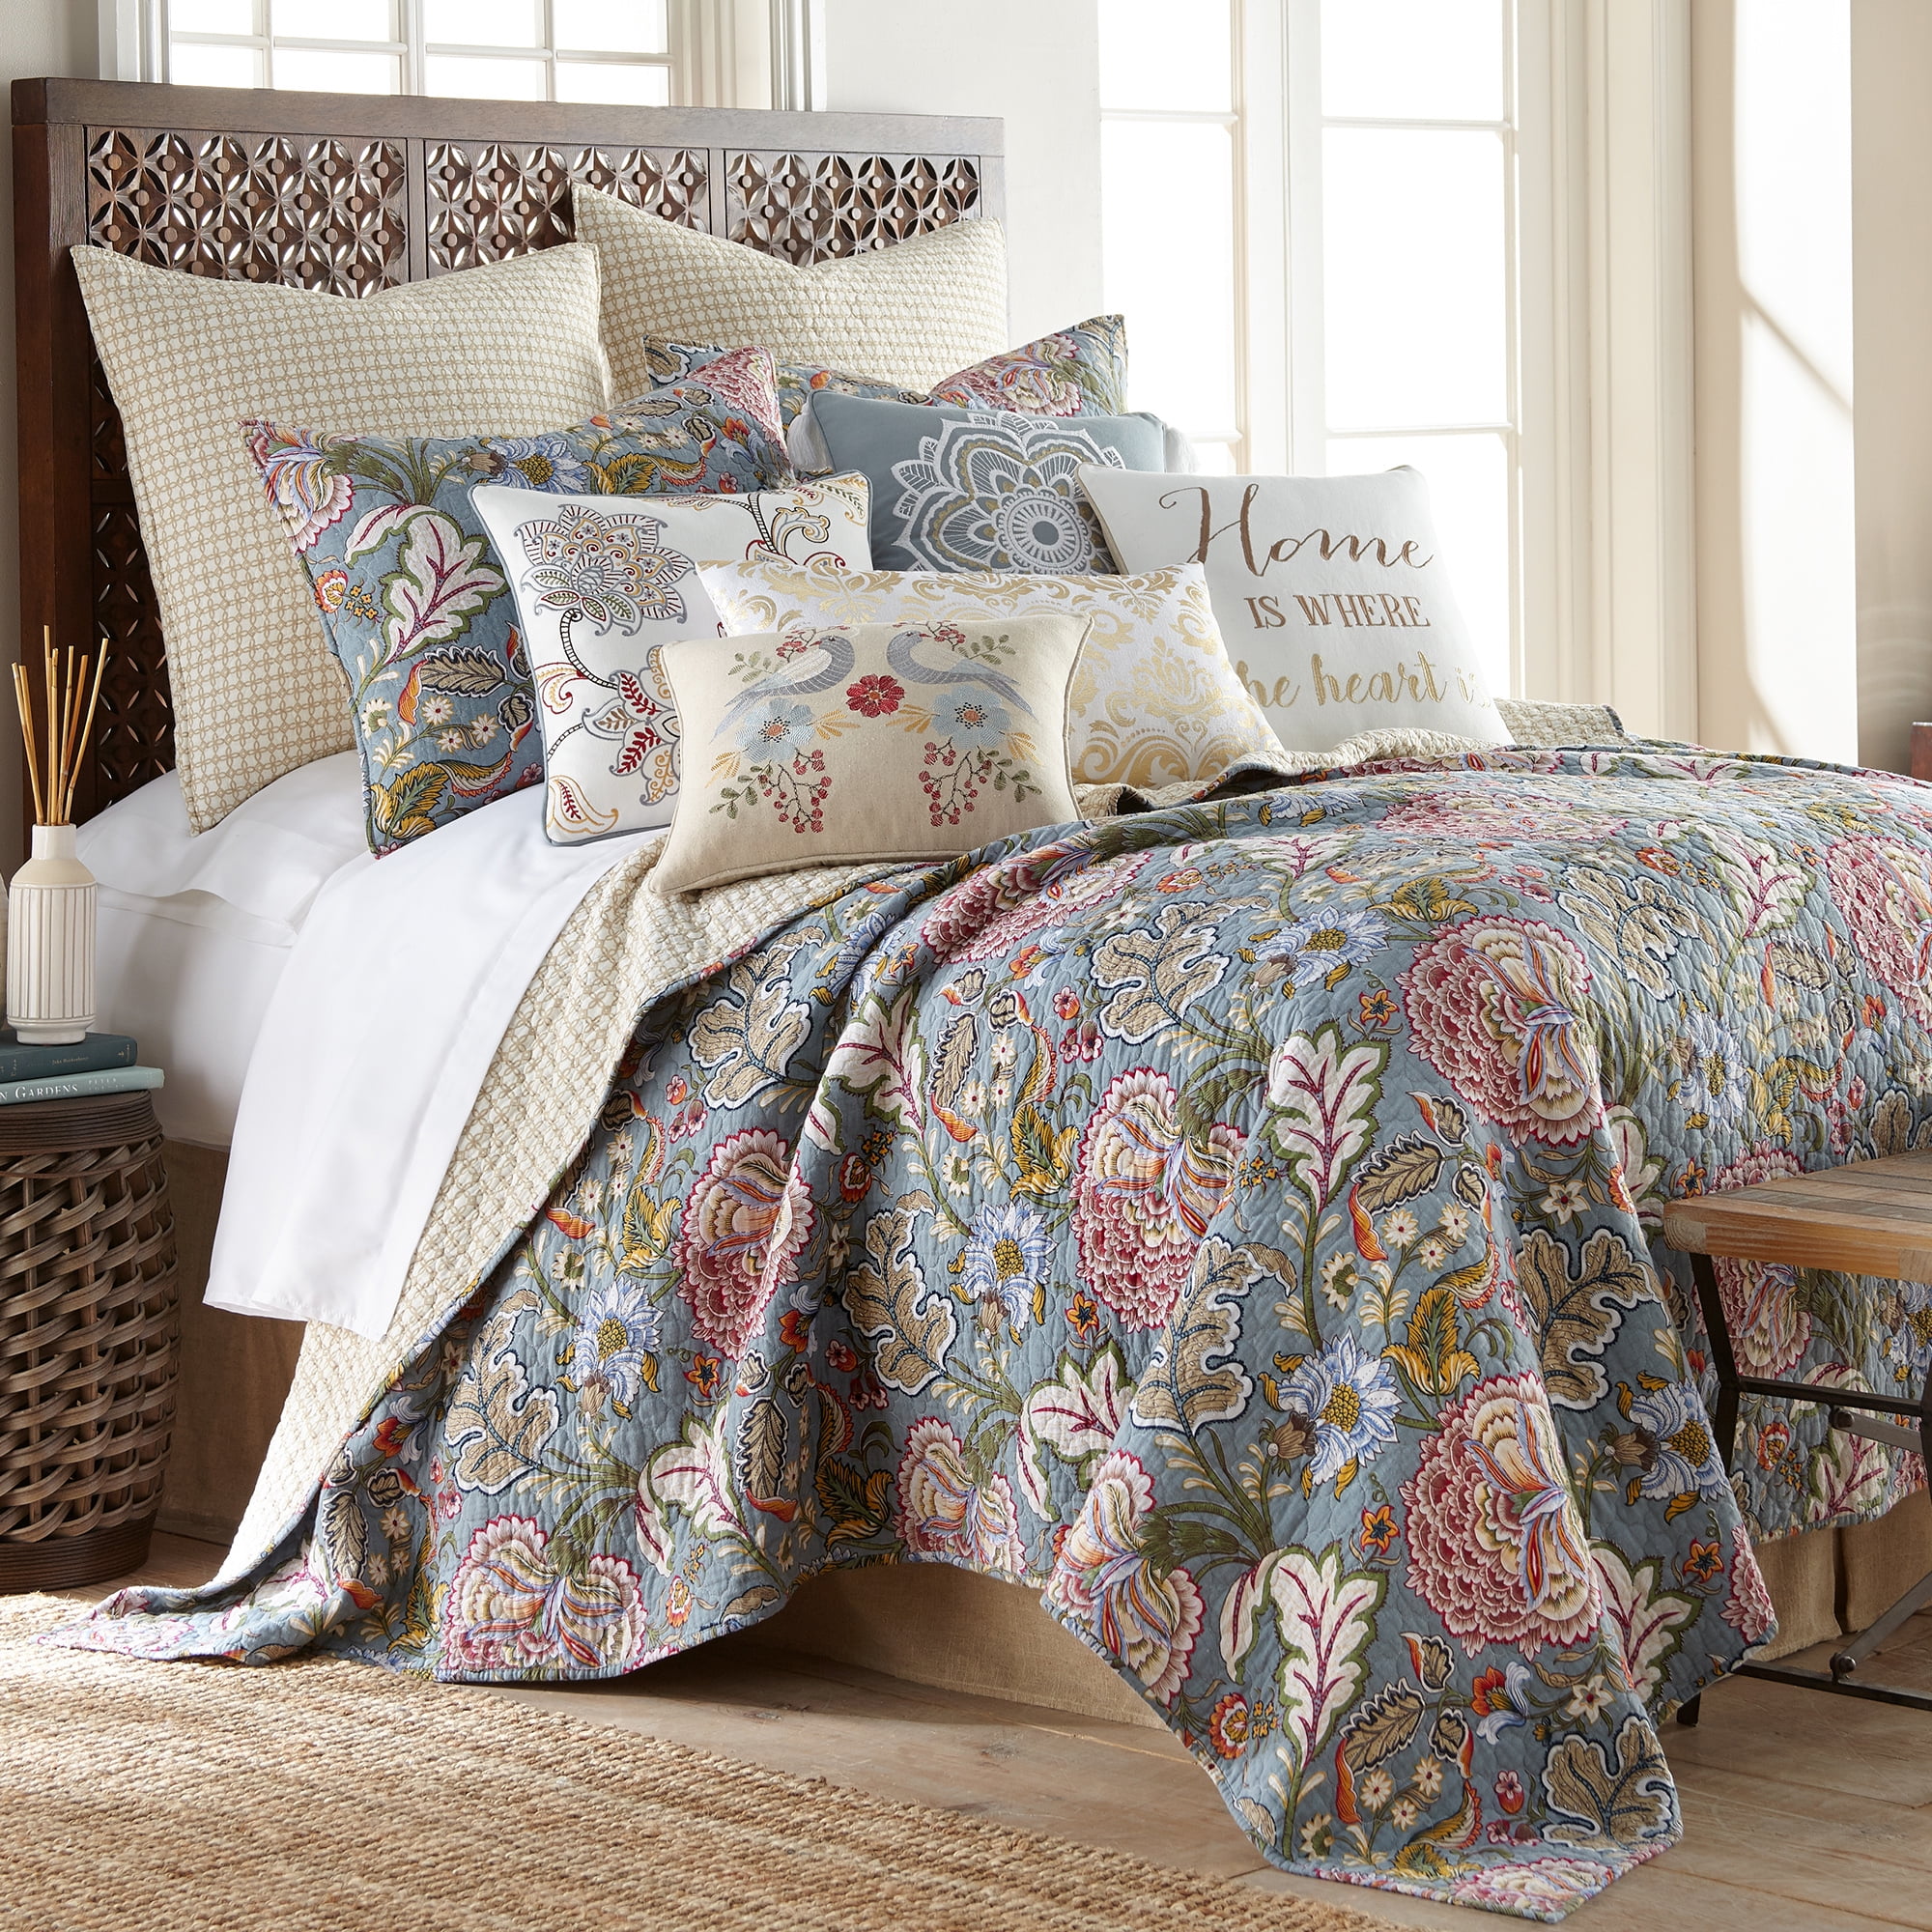 100% Cotton Full Queen Size 3pcs Blue Floral Quilt Set-Reversible w/ Pillowshams 